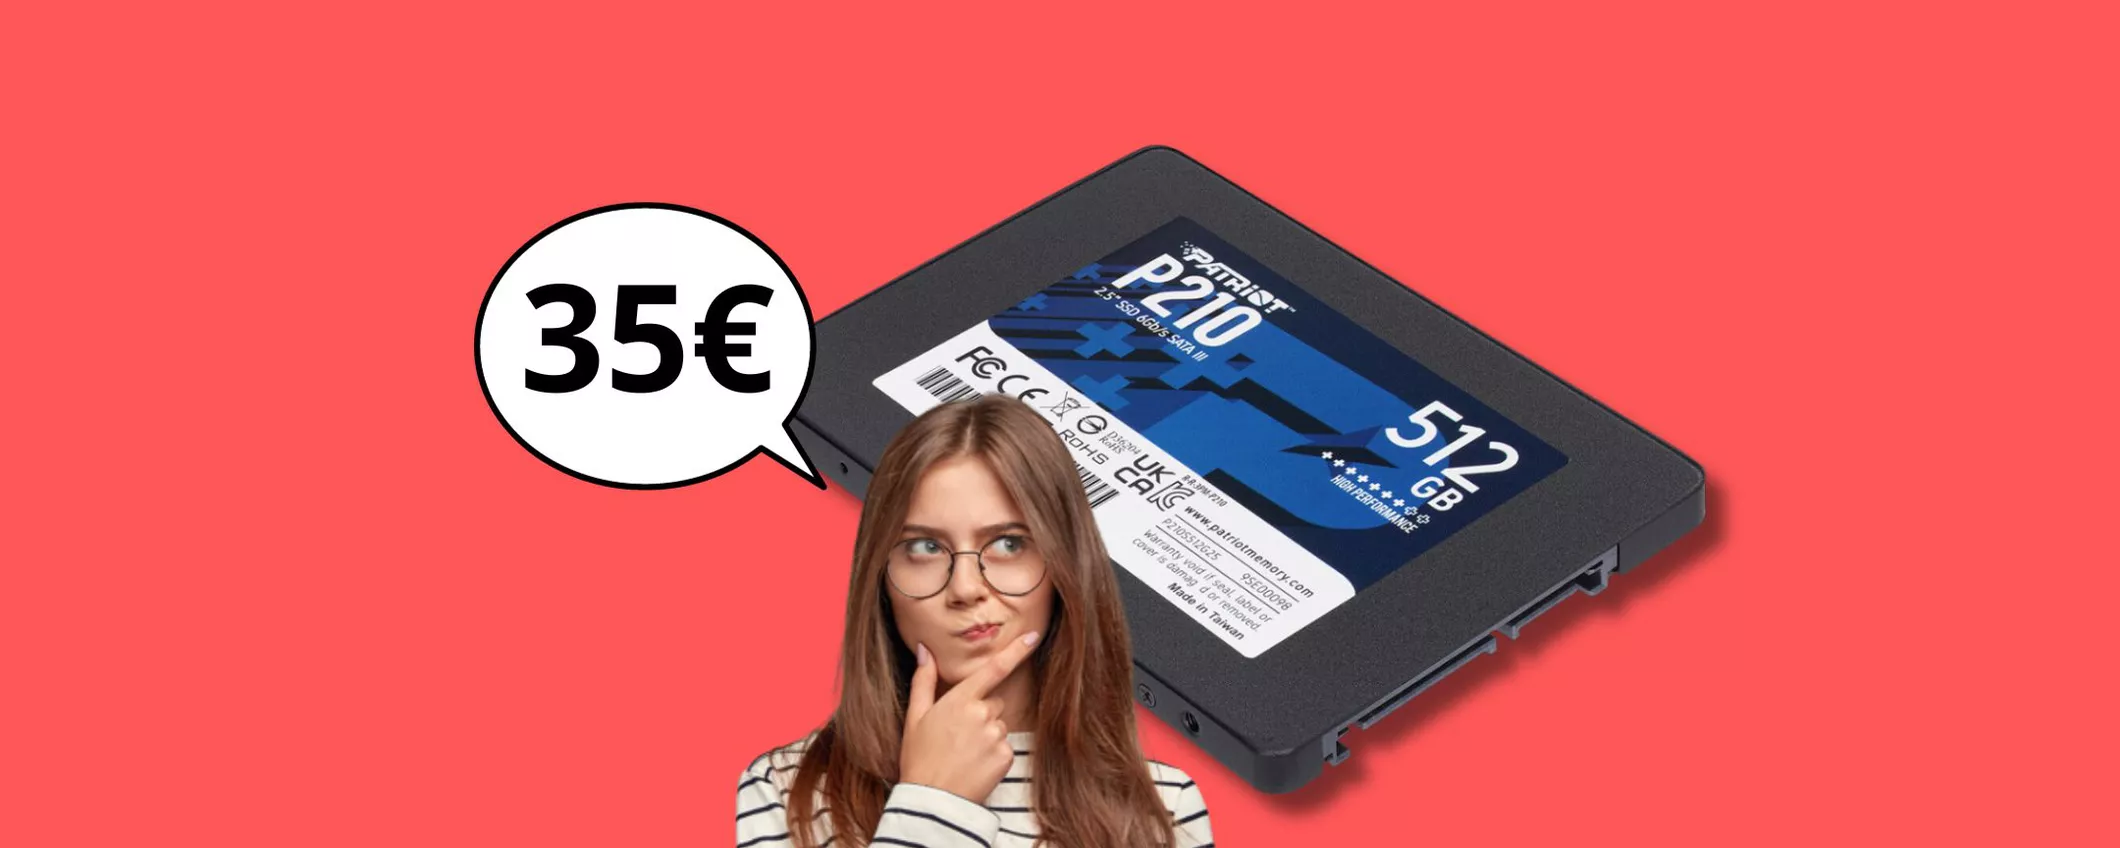 Velocizza il tuo Pc con soli 35 euro: acquista l'Hard disk esterno PATRIOT P210 da 512 GB in OFFERTA!